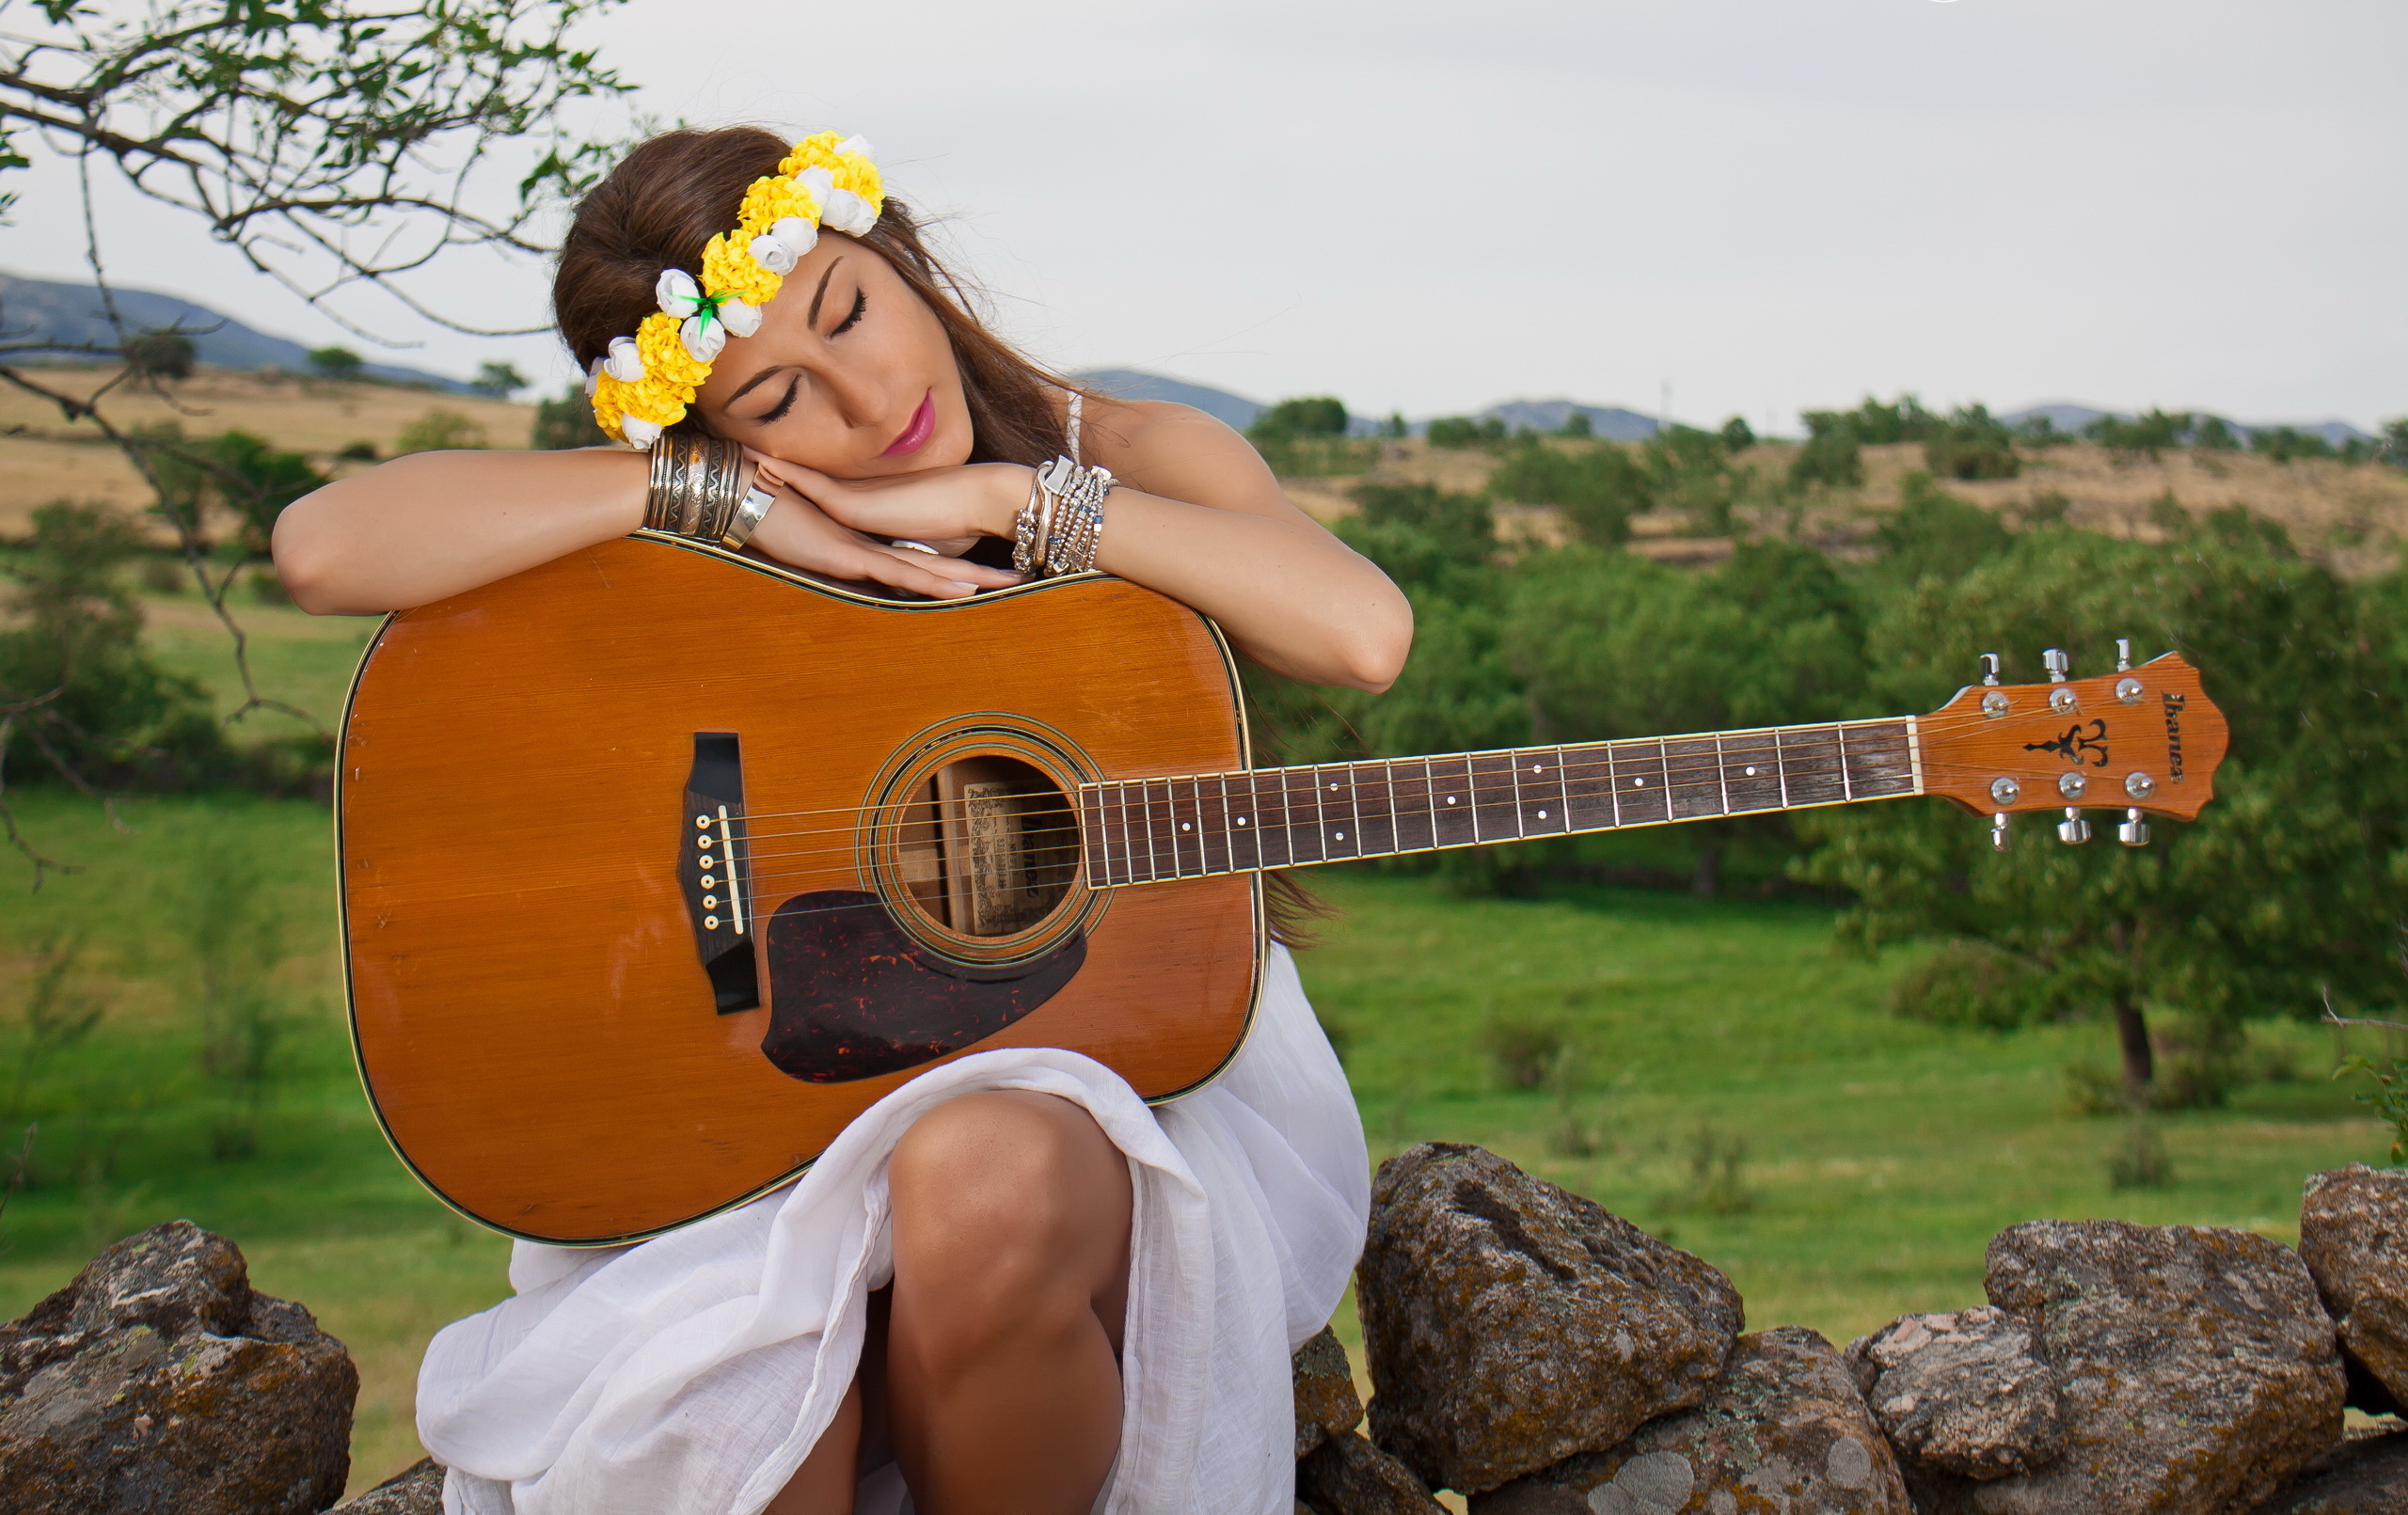 Послушать песню играть. Девушка с гитарой. Фотосессия с гитарой. Девушка с гитарой на природе. Девушка с электрогитарой.